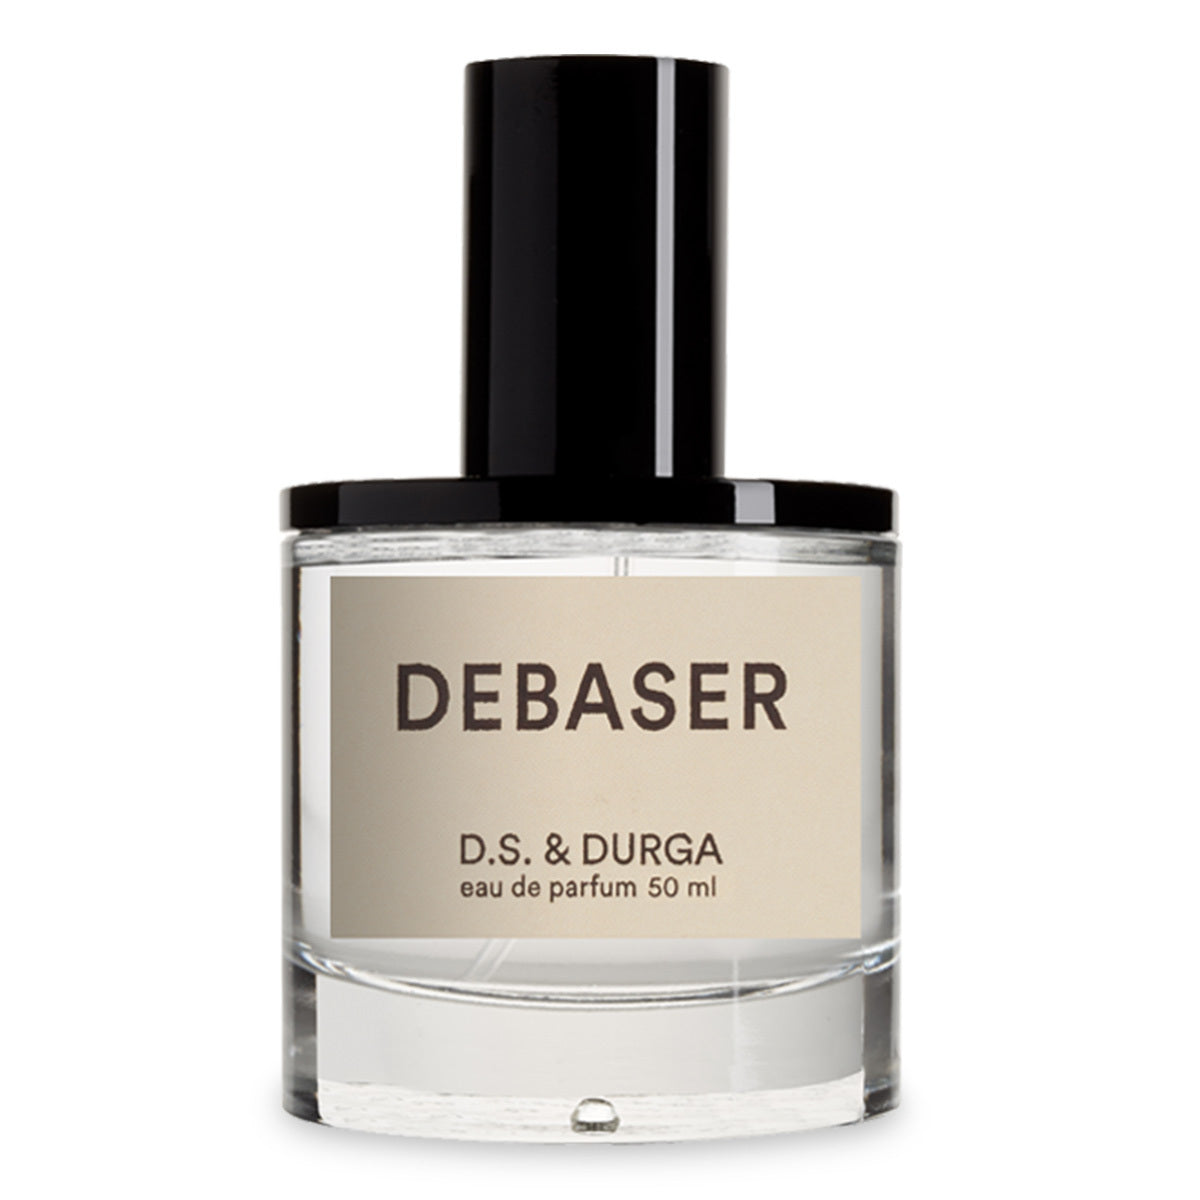 Primary image of Debaser Eau de Parfum